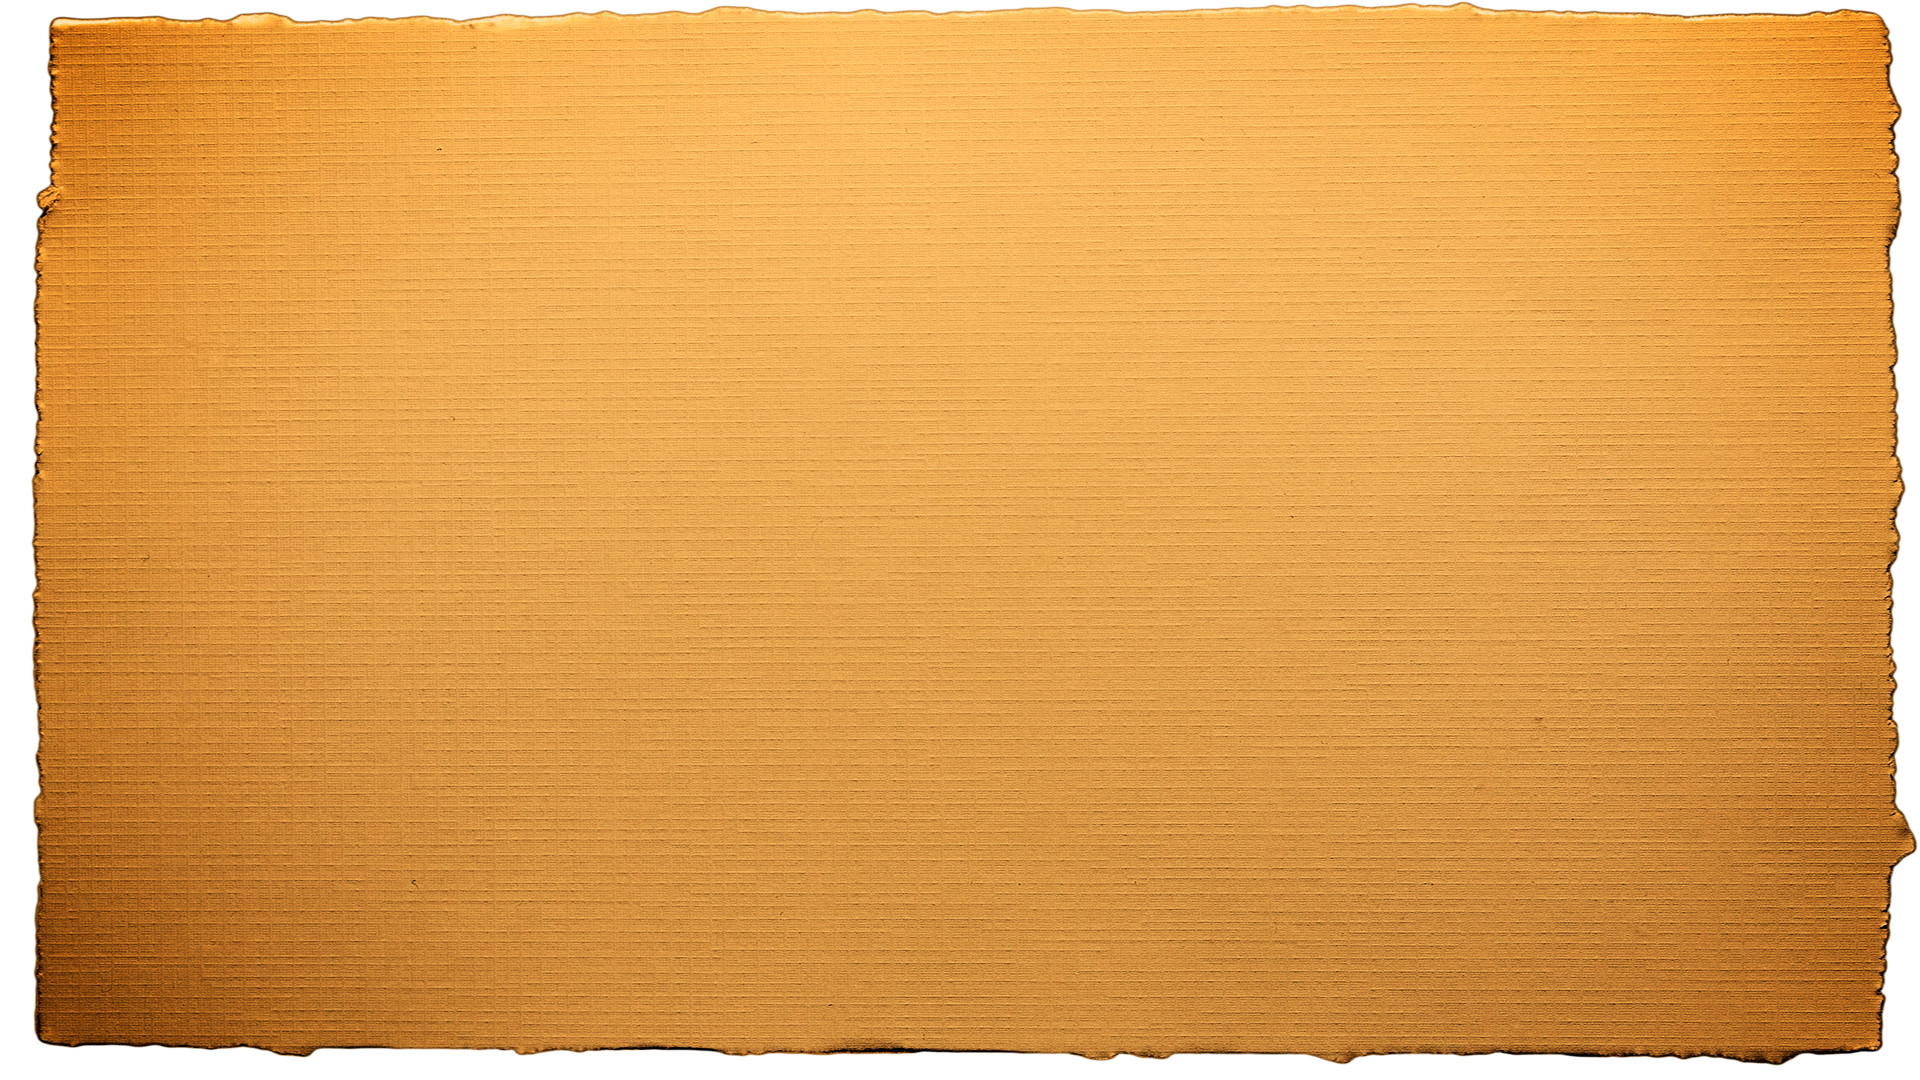 1920x1080 Torn Paper Wallpaper - WallpaperSafari